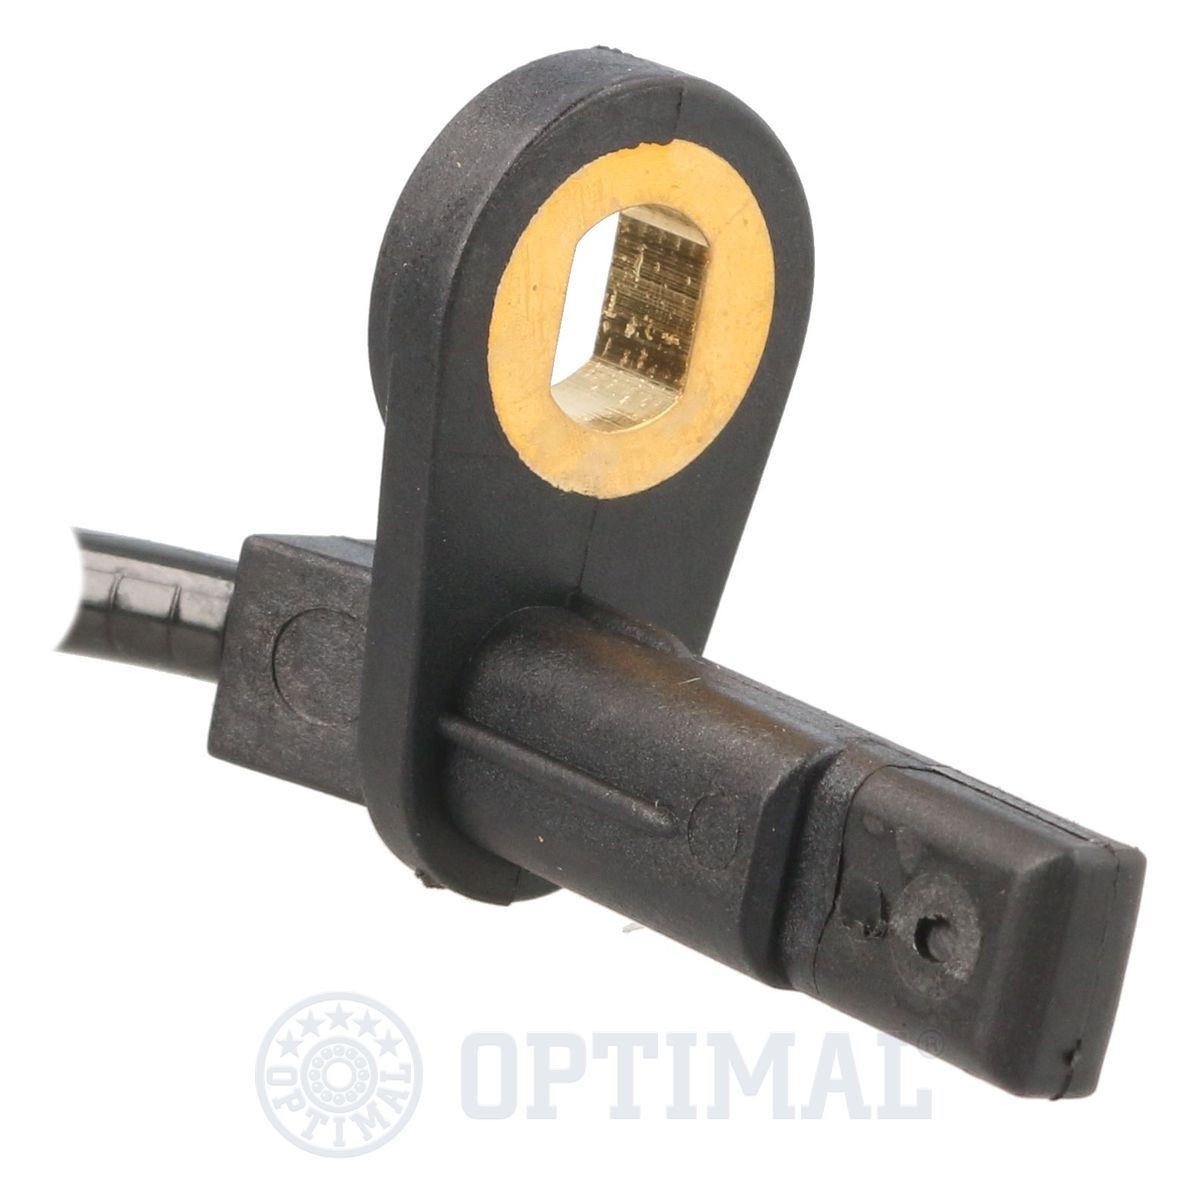 06S246 Anti lock brake sensor OPTIMAL 06-S246 review and test